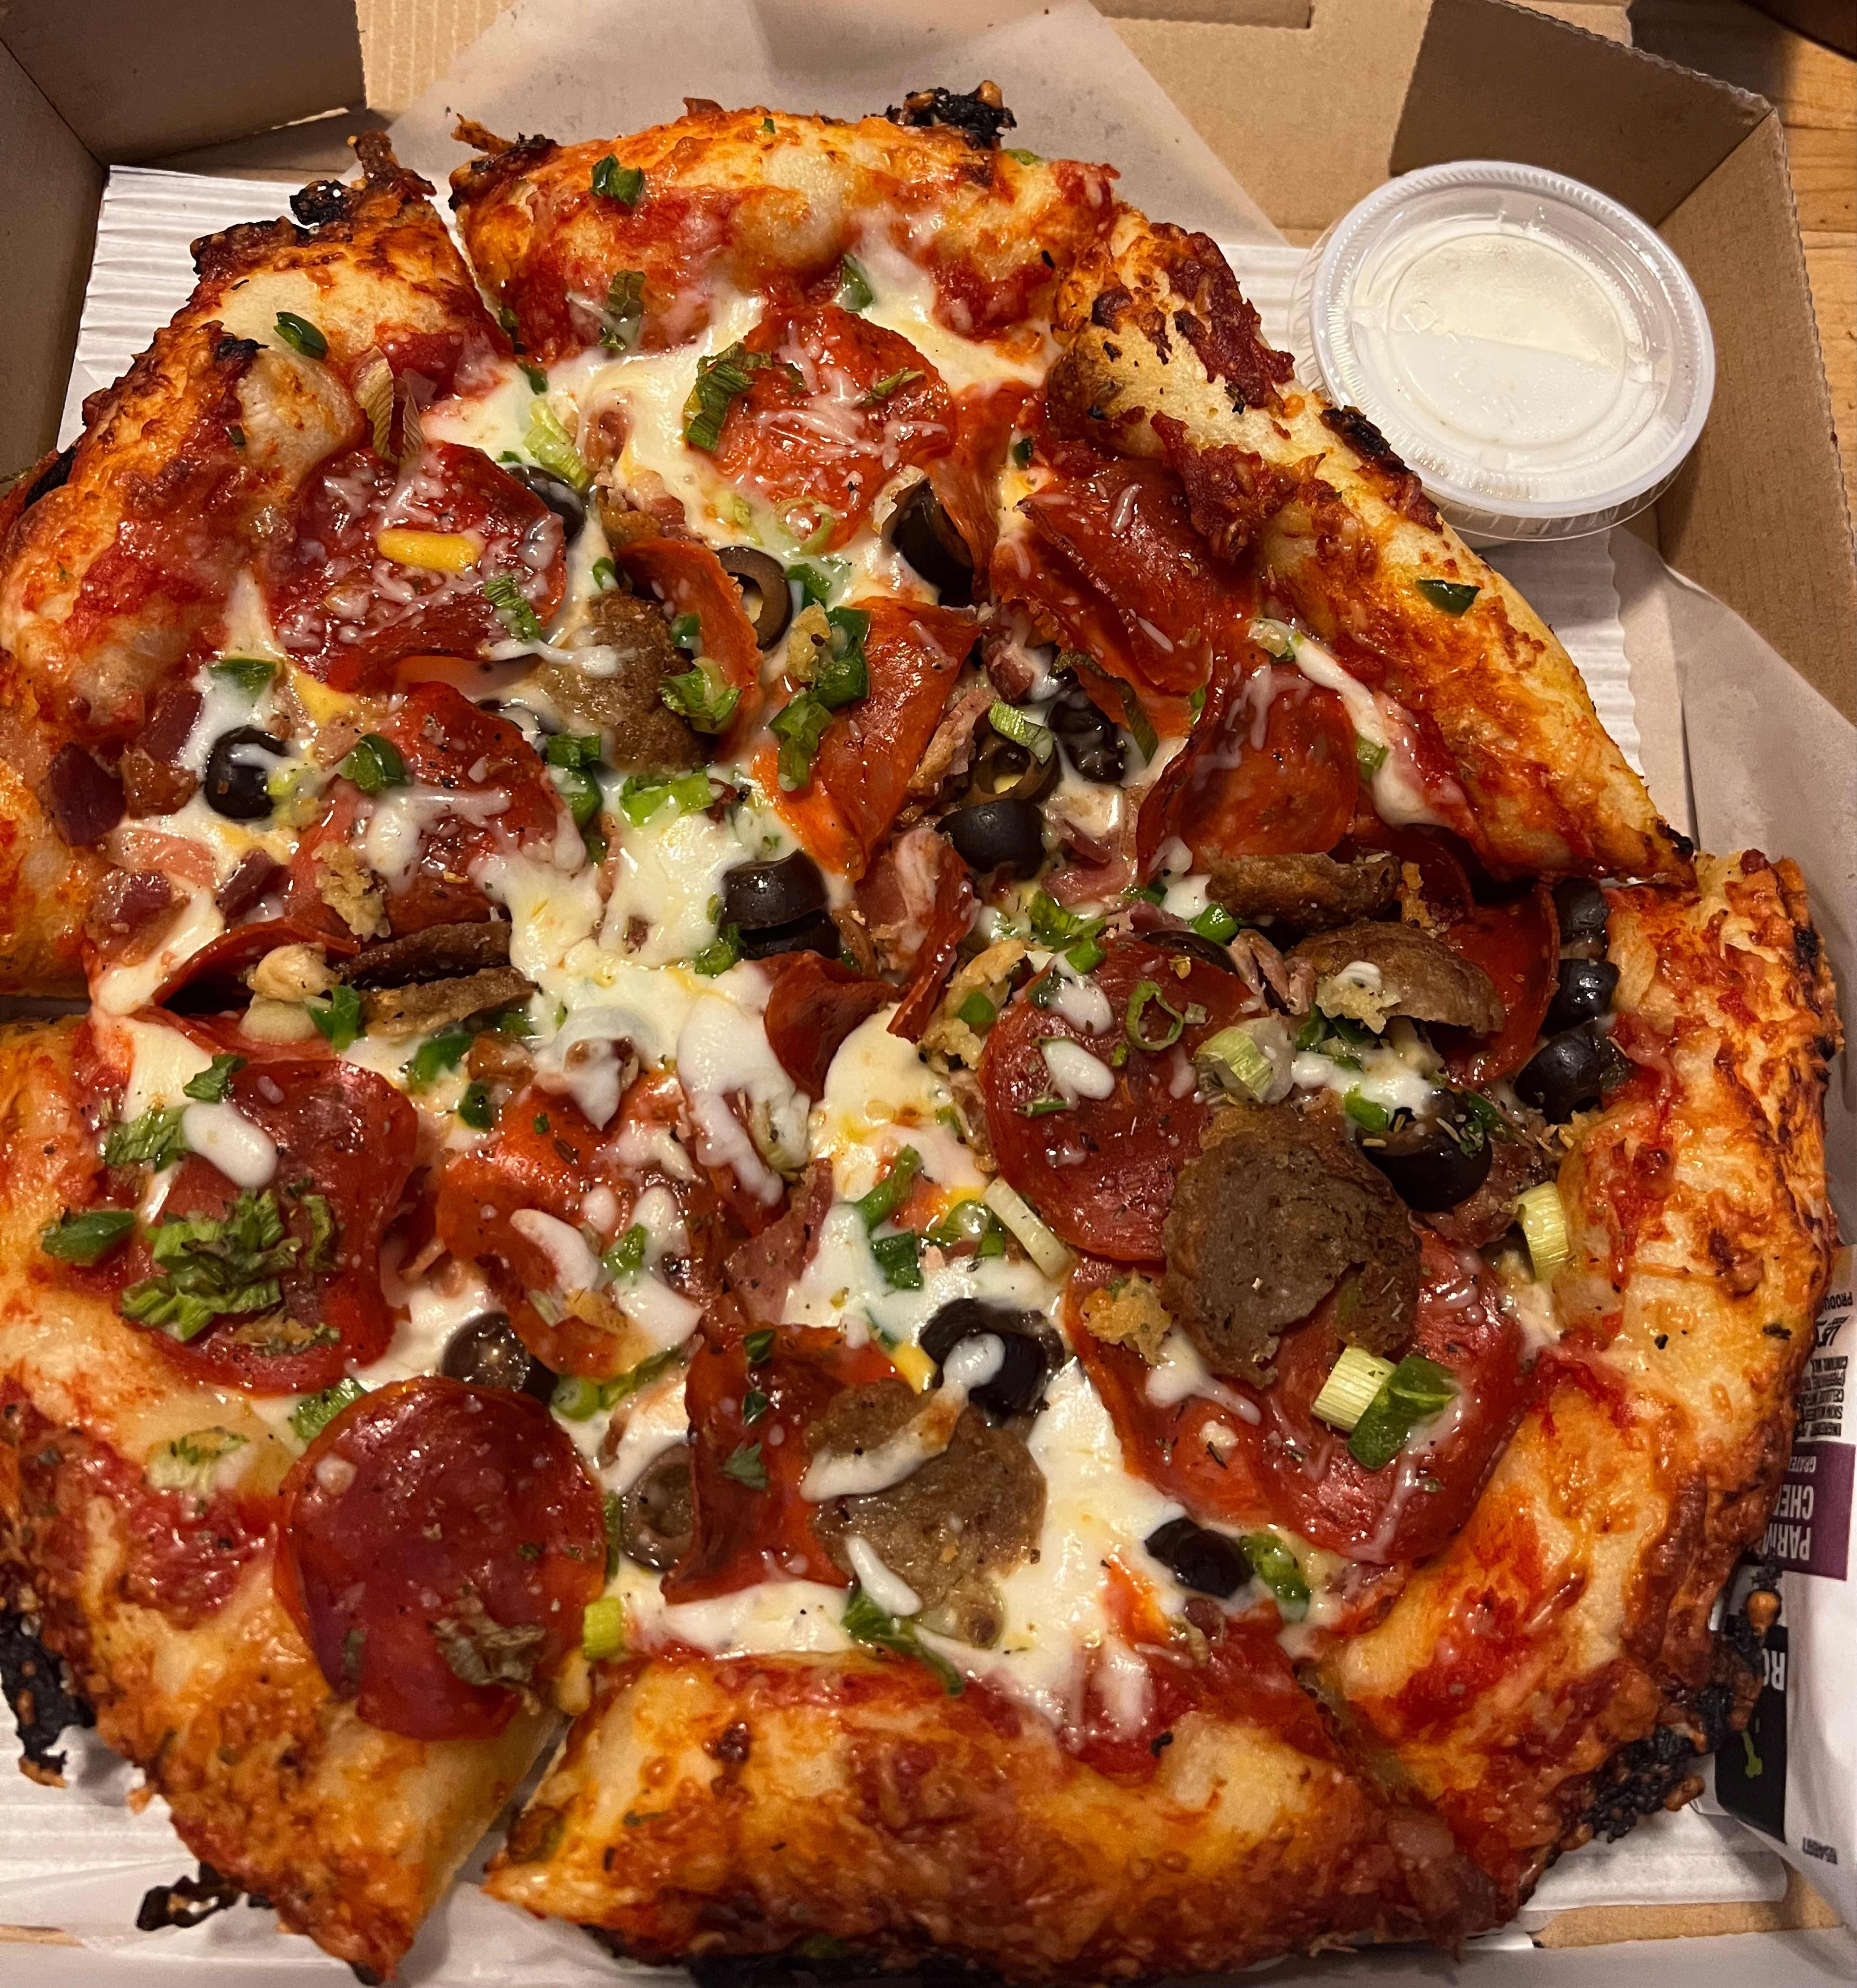 Bigfoot Pizza Menu Portland • Order Bigfoot Pizza Delivery Online